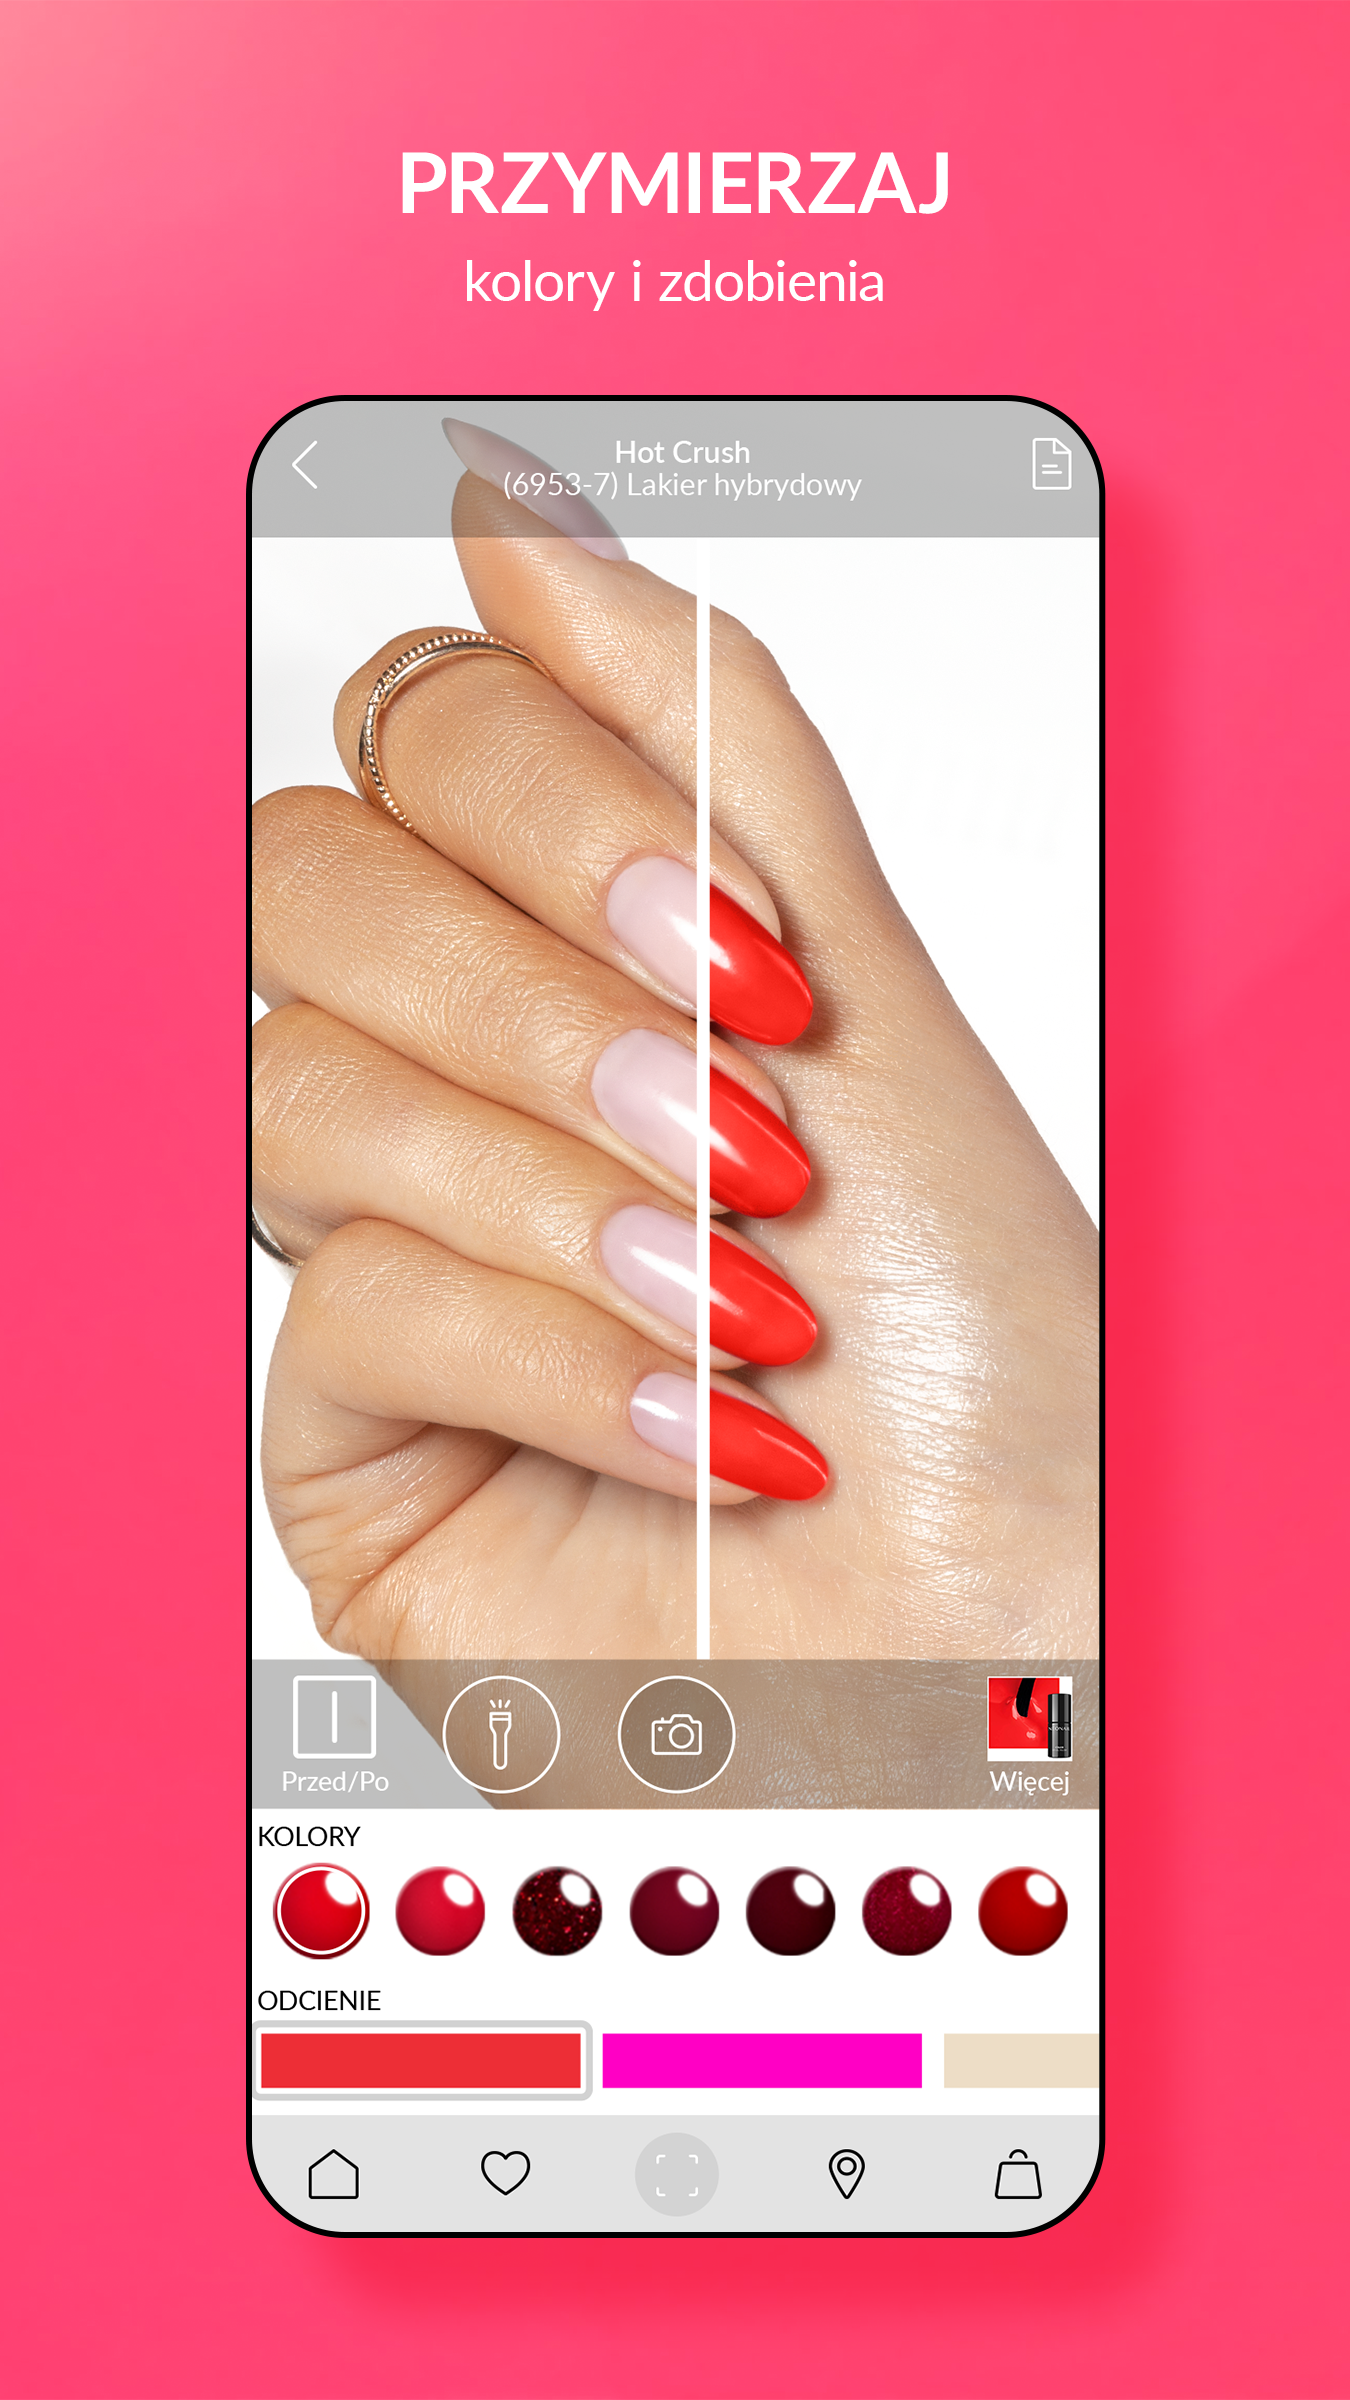 NEONAIL wprowadza rewolucję – przymierz nowy kolor manicure przy pomocy aplikacji!